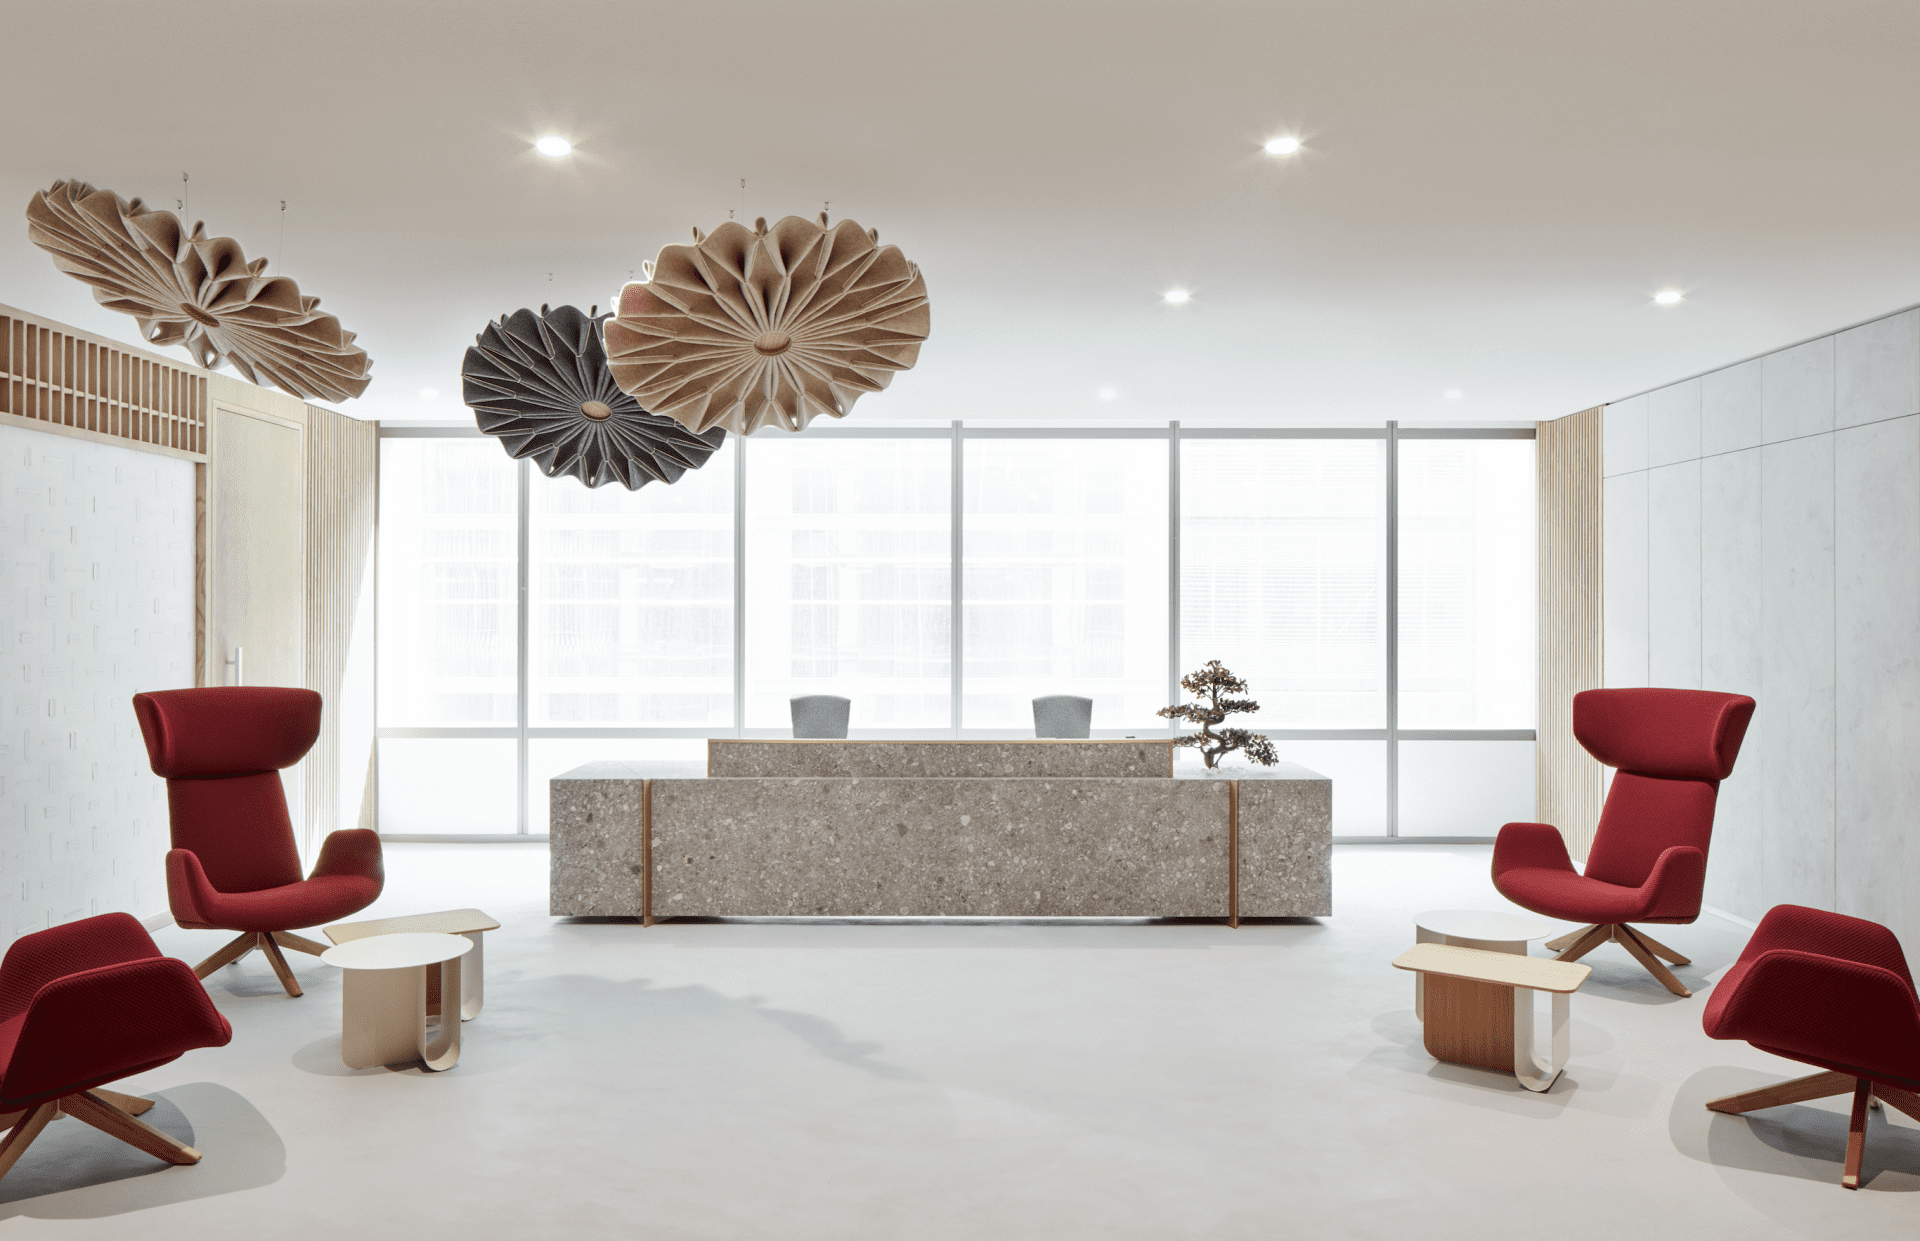 Roar recreates slice of home for Takeda’s Dubai offices